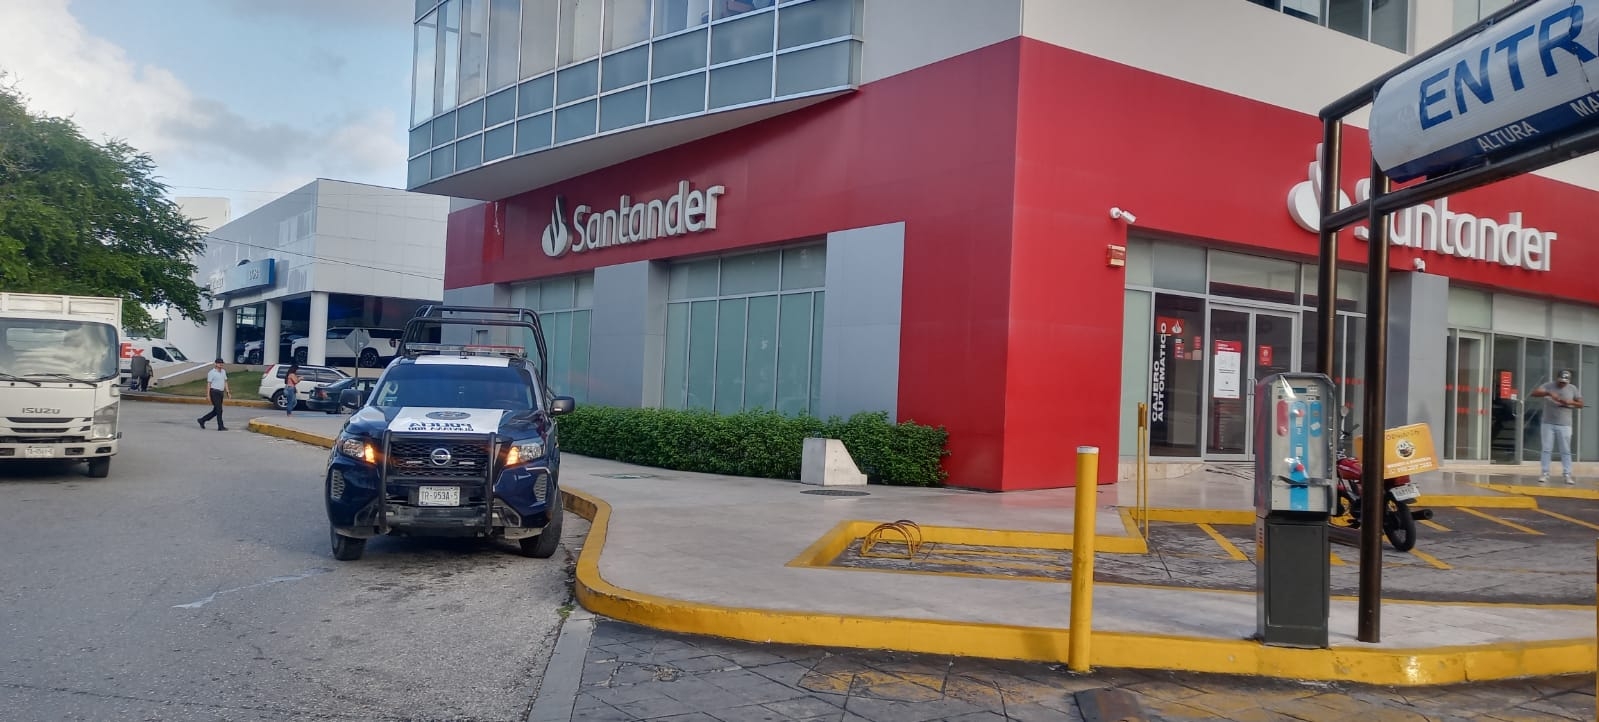 Los sujetos interceptaron a la víctima afuera de las instalaciones del Santander en Plaza Hollywood en Cancún